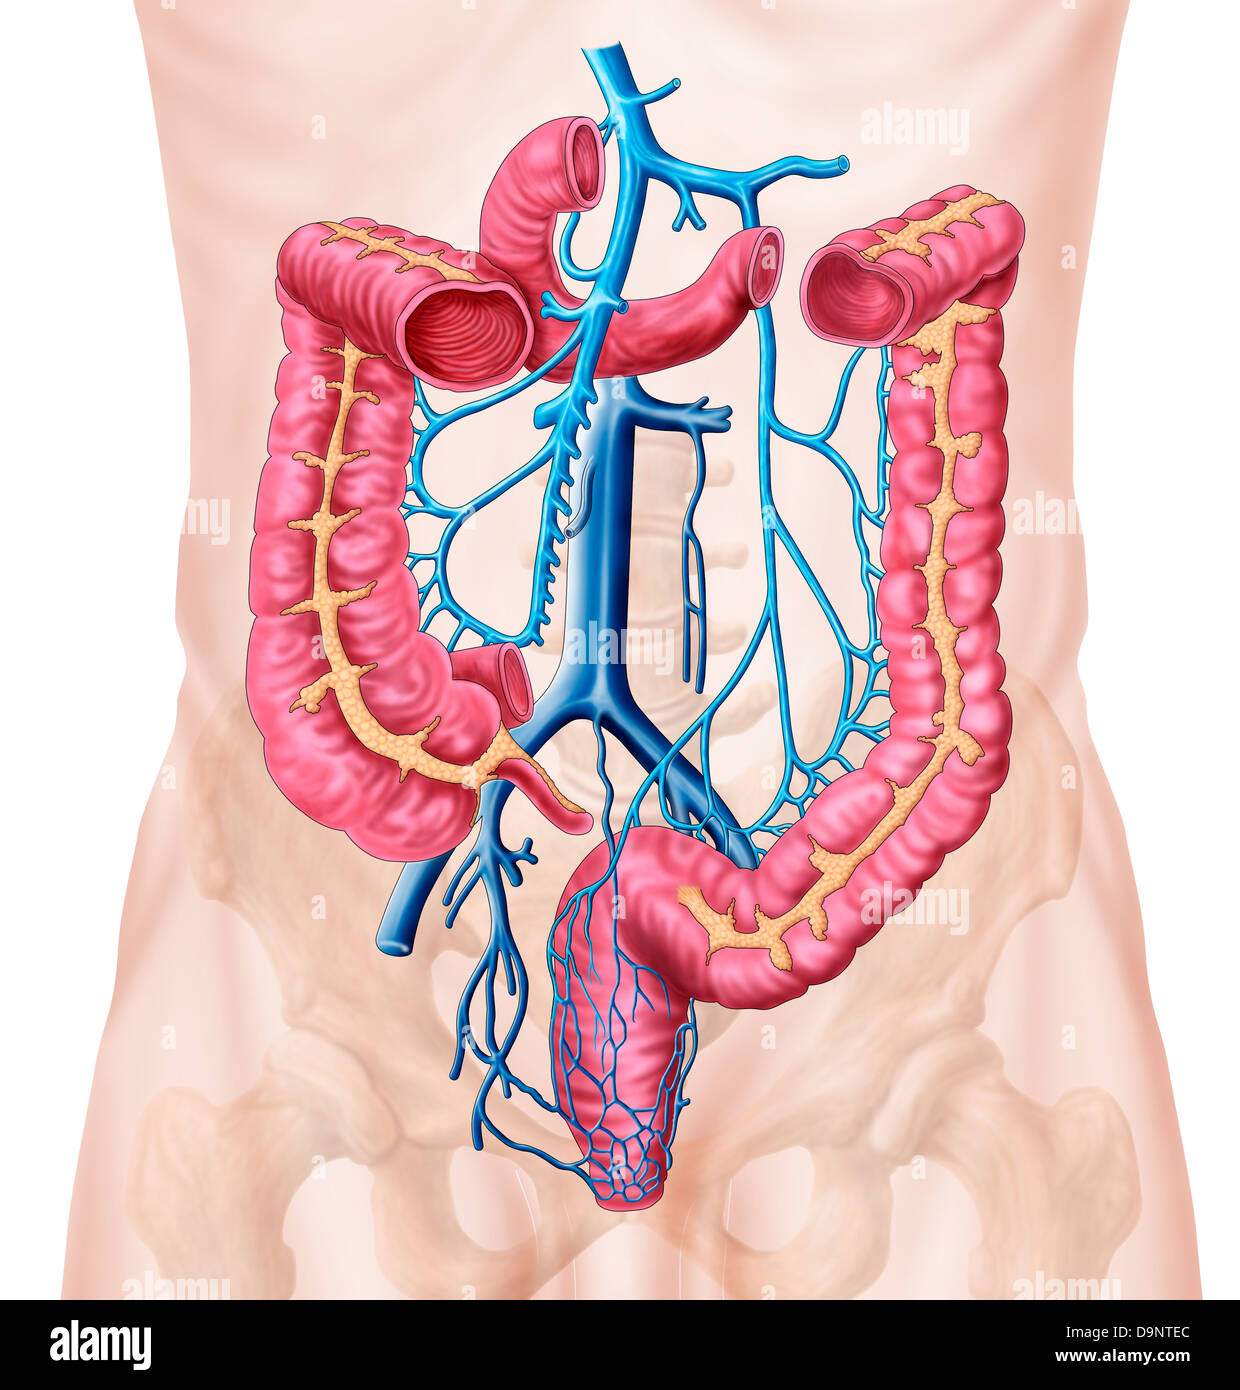 Anatomia di addominale umana sistema della vena. Foto Stock